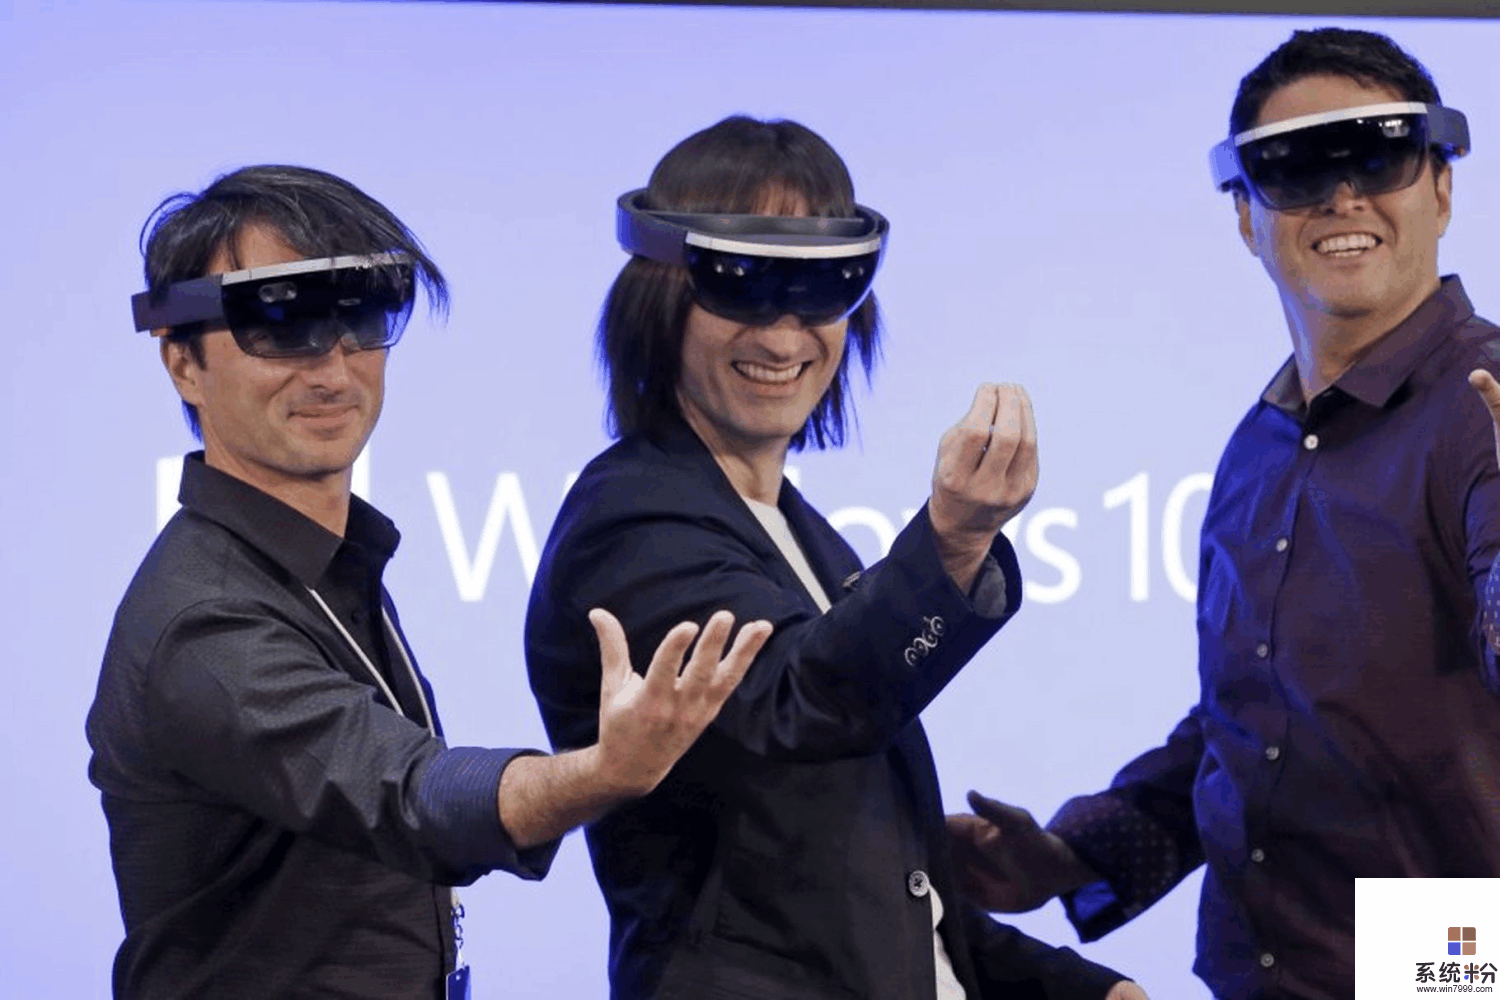 微软HoloLens发明者: 手机已经死了, 只是人们还没意识到(1)